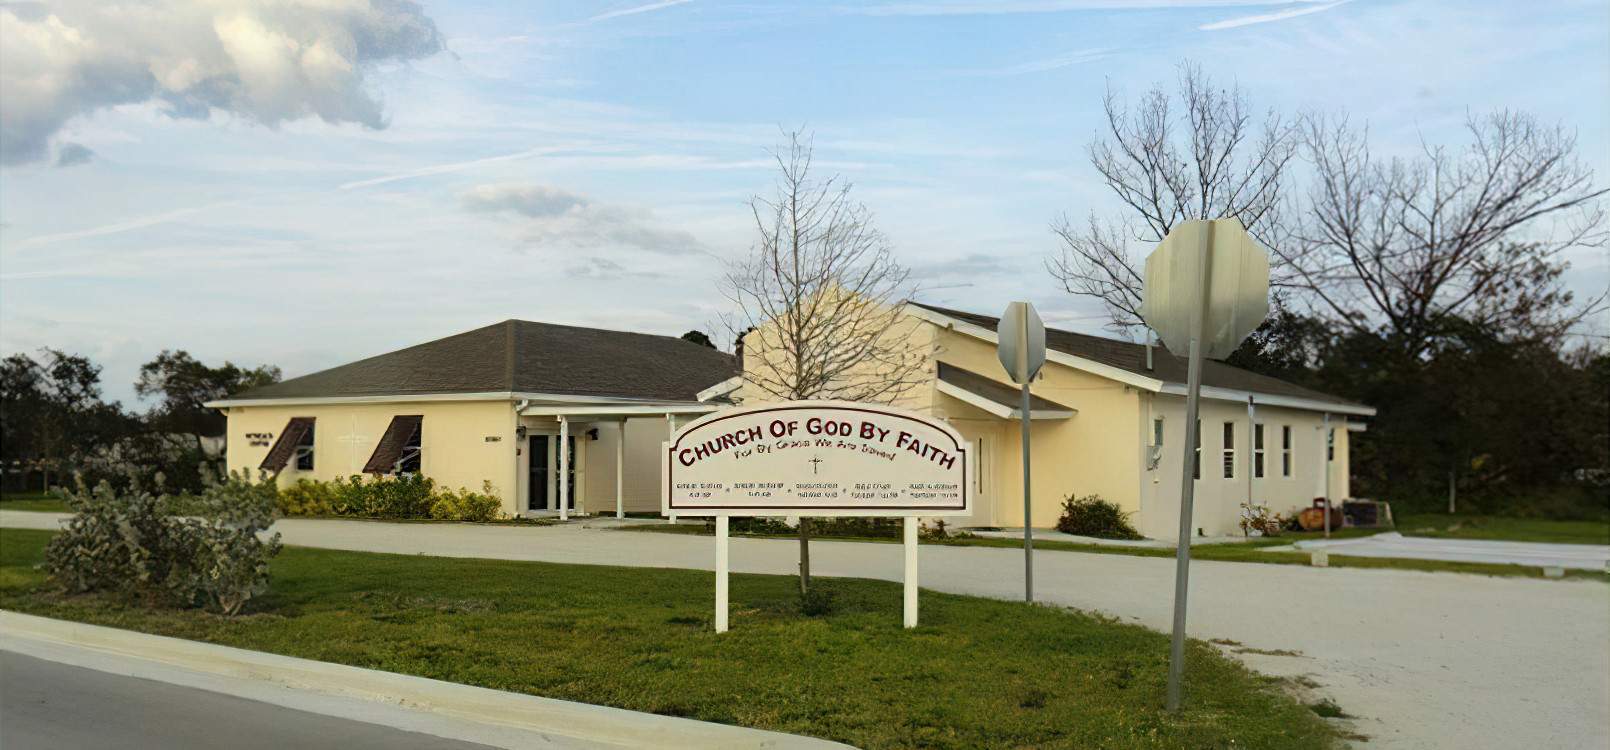 Church of God by Faith outreach center building